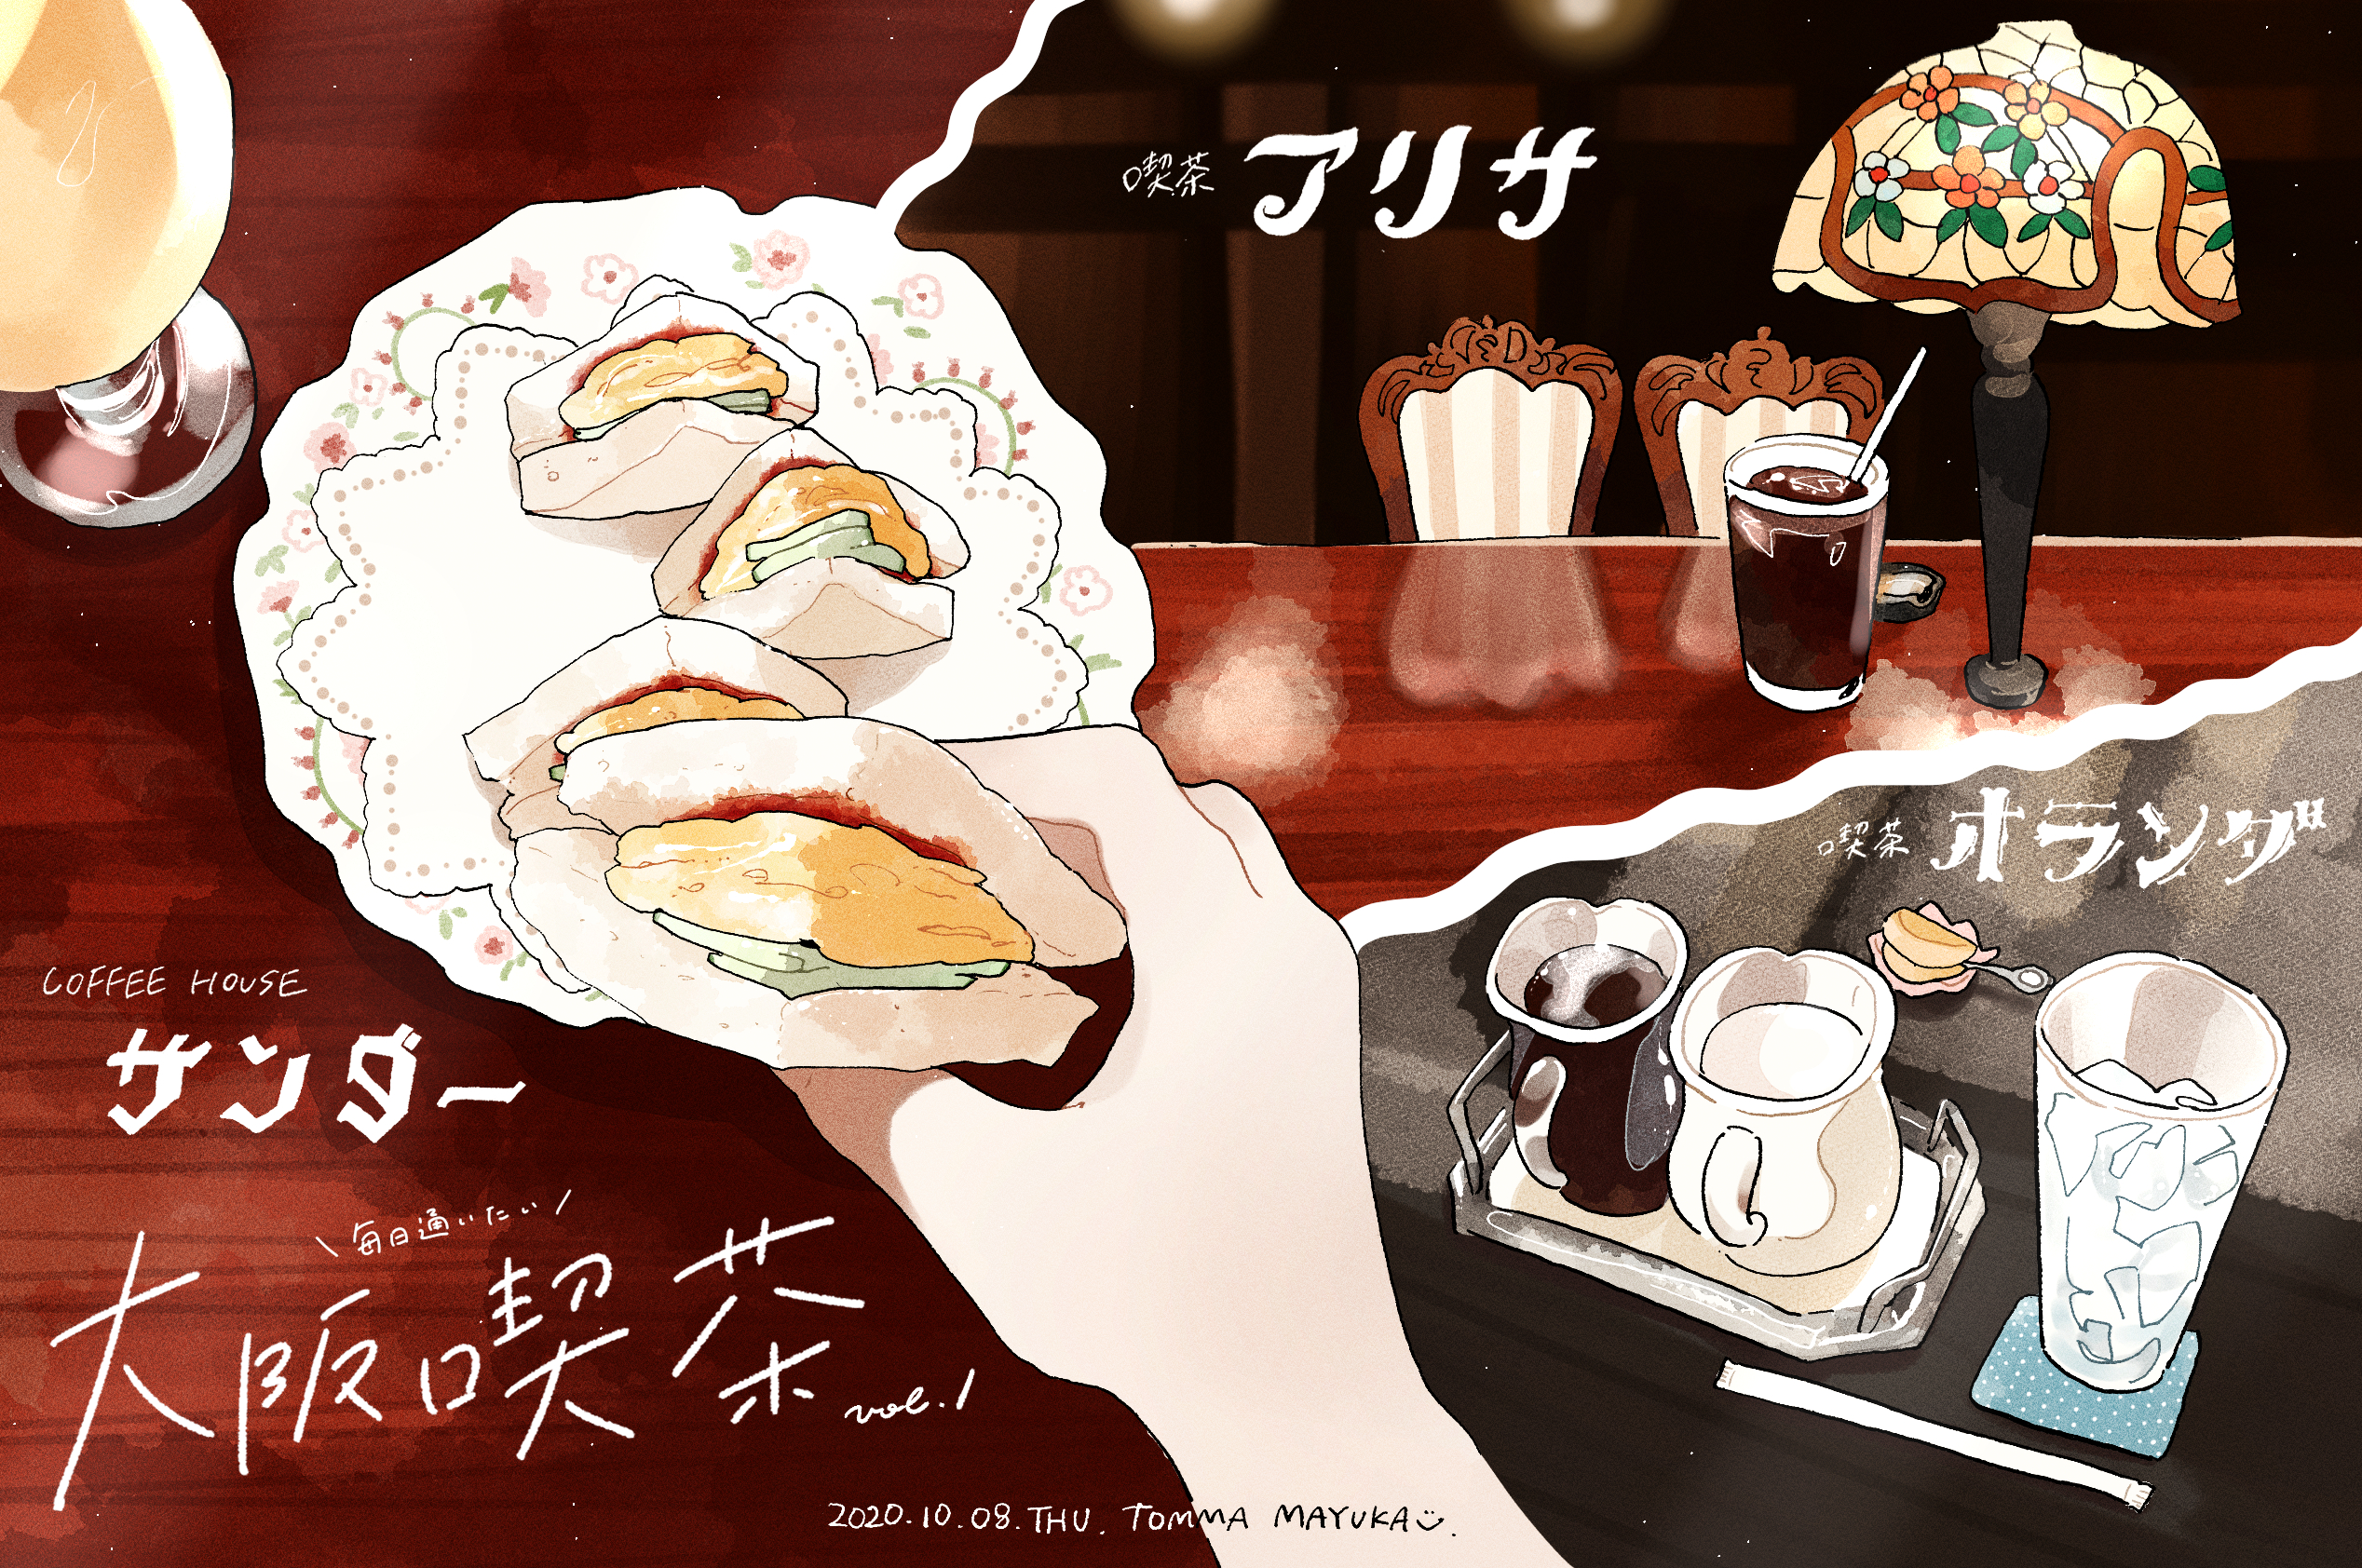 每天都想去的大阪咖啡馆vol.1插画图片壁纸